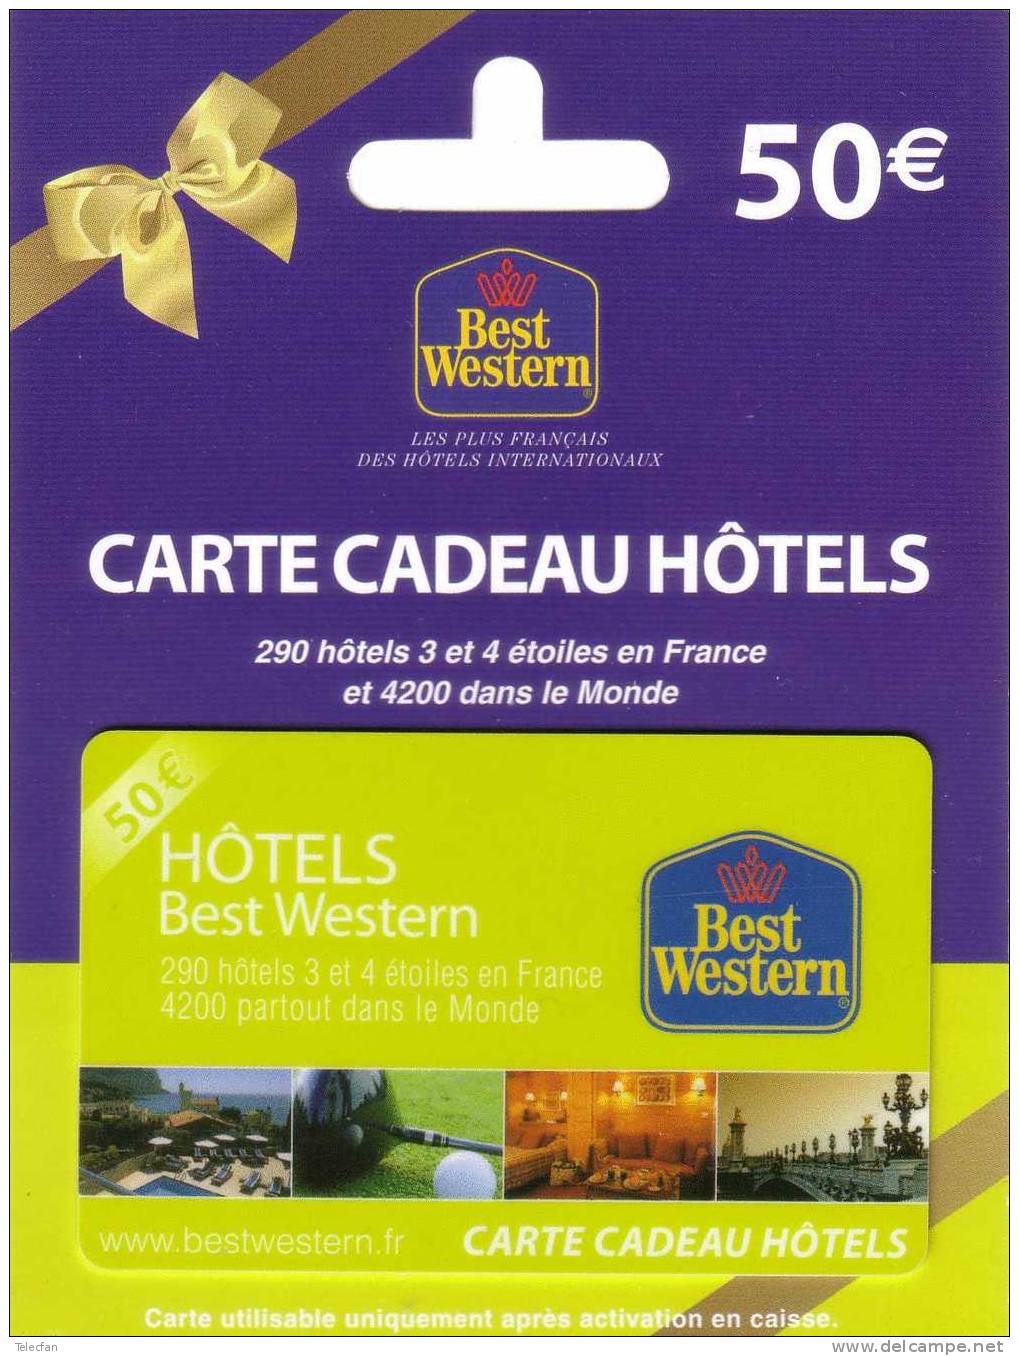 CARTE CADEAU HOTELS BEST WESTERN JAUNE 50 € ENCART ORIGINE NEUVE MINT IN ORIGINAL FOLDER - Carta Di Fedeltà E Regalo